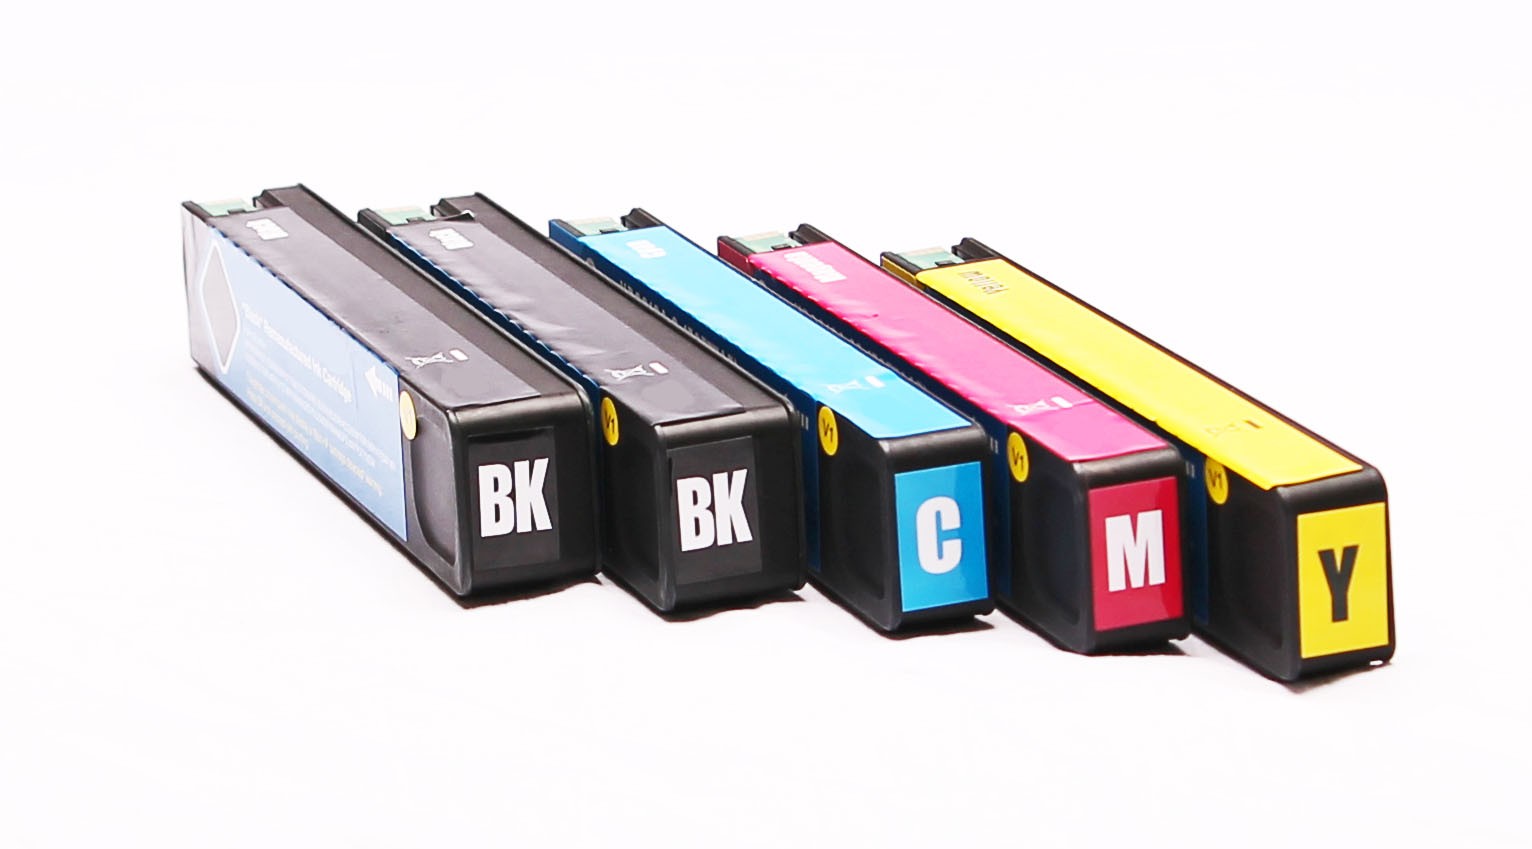  Pack de 5 Cartouches remanufacturées HP 913A Black + couleurs